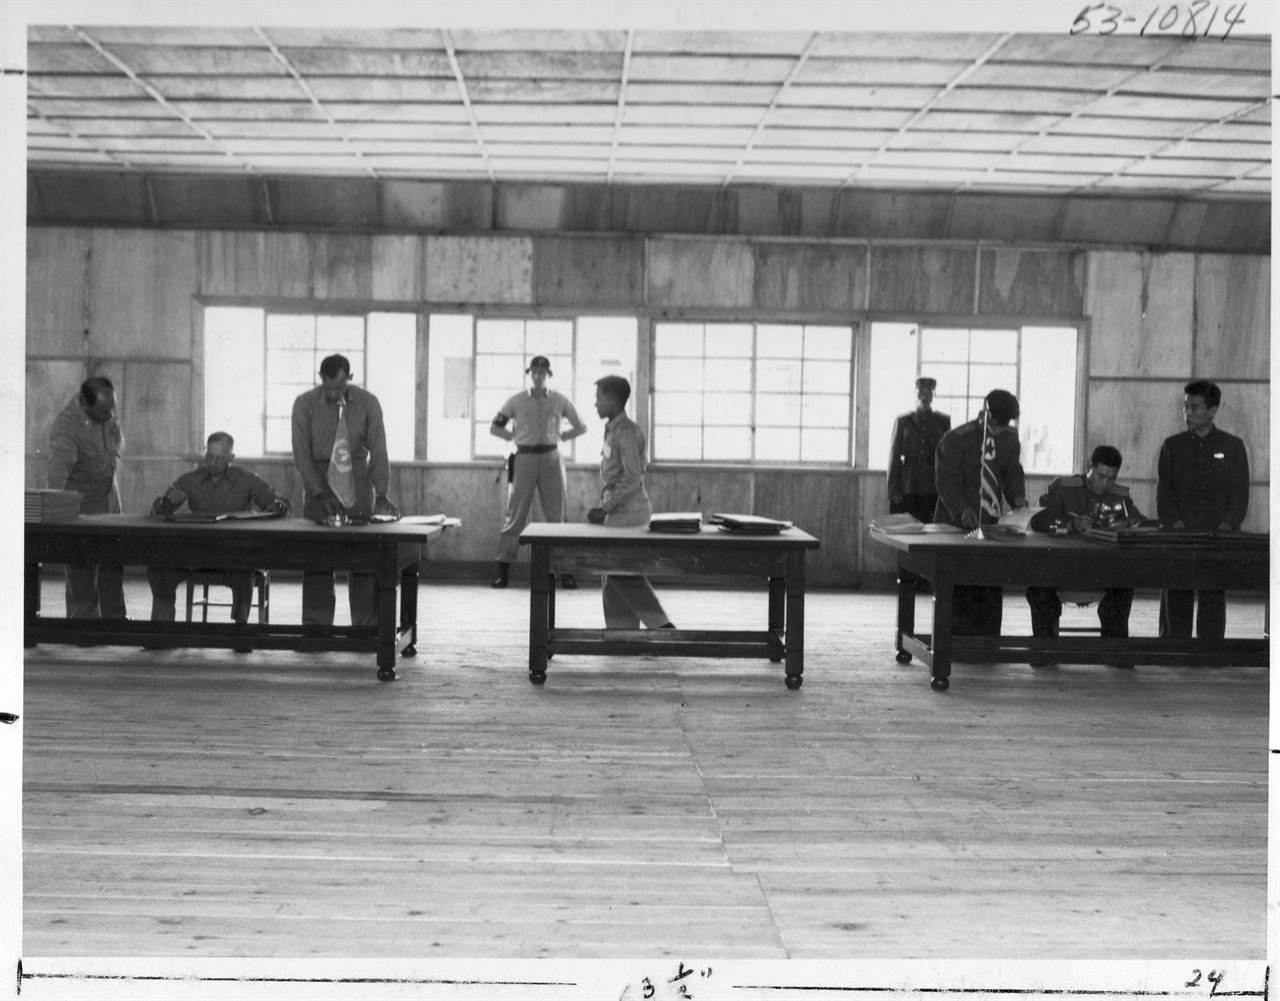 1953. 7. 27. 판문점, 정전회담 조인식. 왼쪽 책상에서는 유엔군 측 대표 해리슨 장군이, 오른쪽 책상에서는 북한 측 남일 장군이 서명하고 있다.